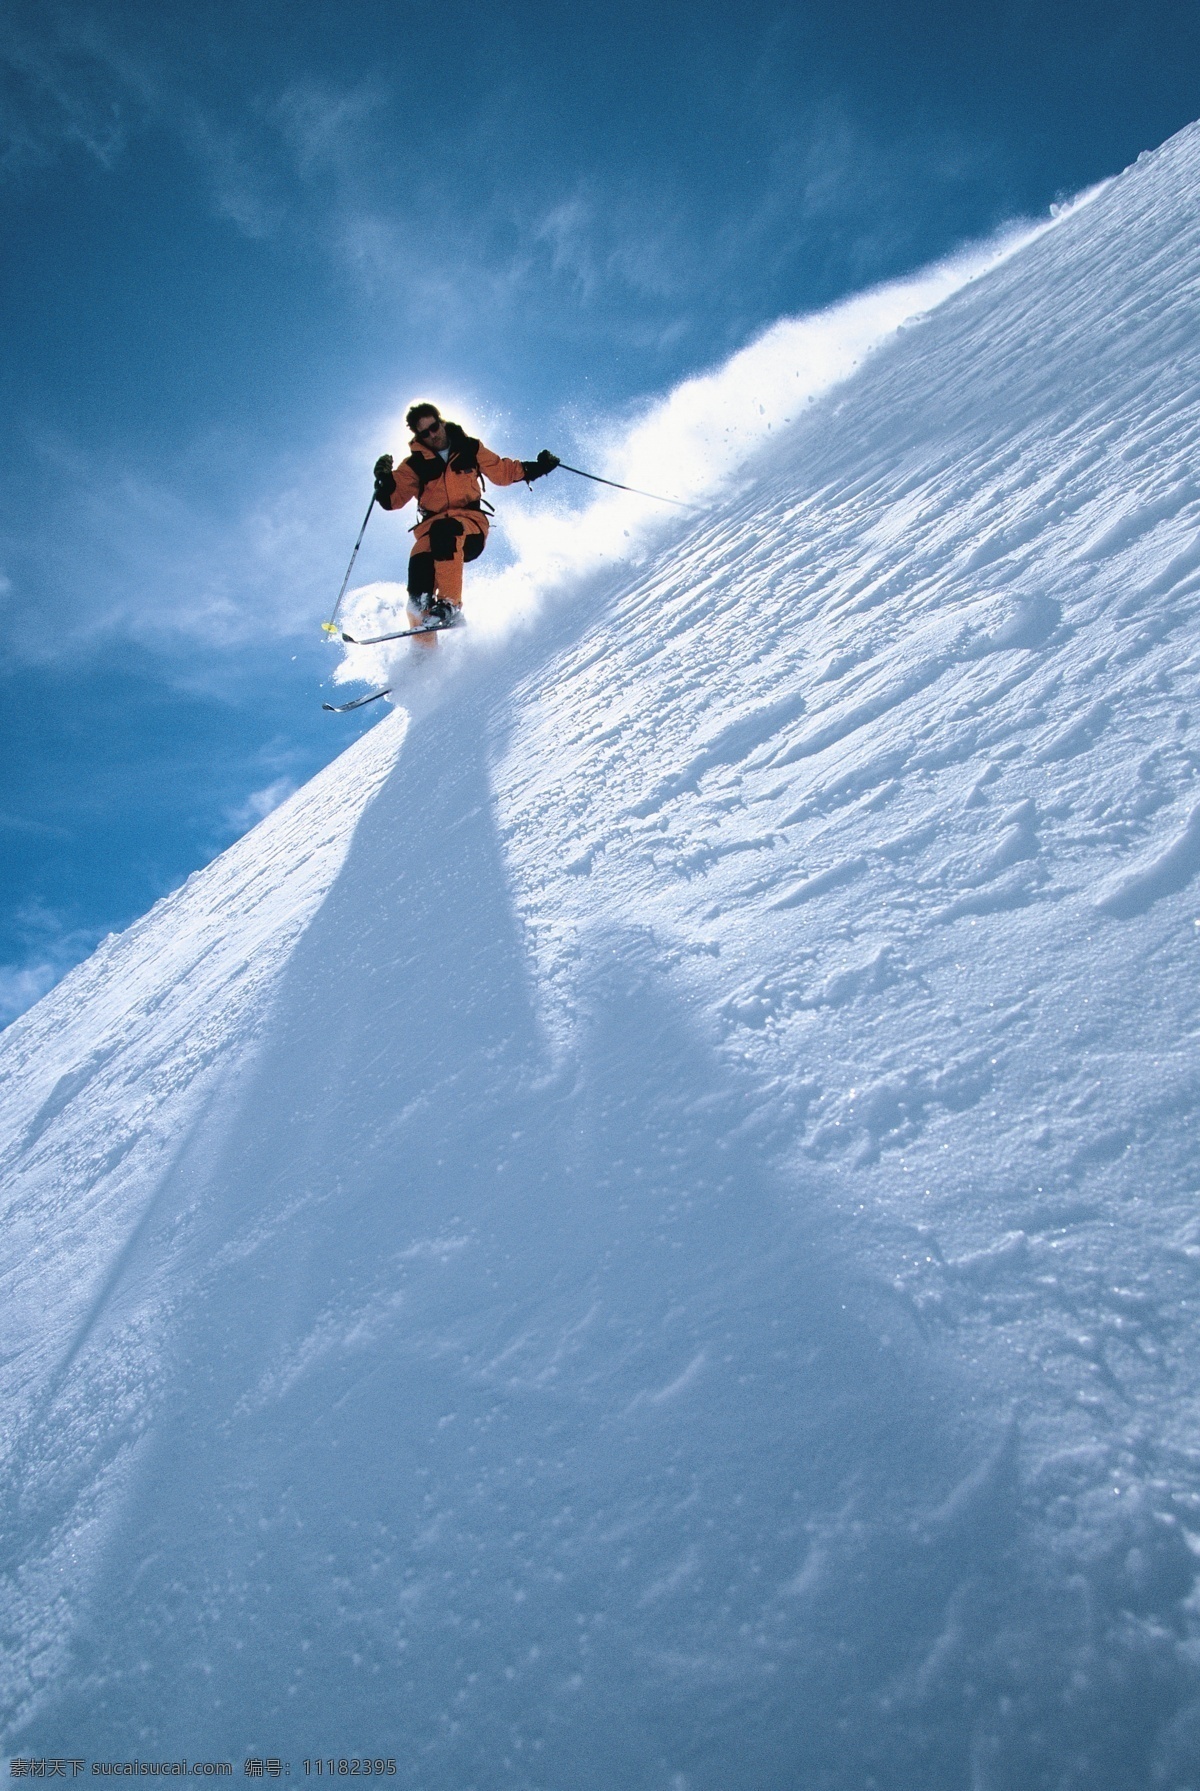 飞速 下滑 滑雪 运动员 高清 冬天 雪地运动 划雪运动 极限运动 体育项目 运动图片 生活百科 风景 雪景 雪山风光 摄影图片 高清图片 体育运动 蓝色